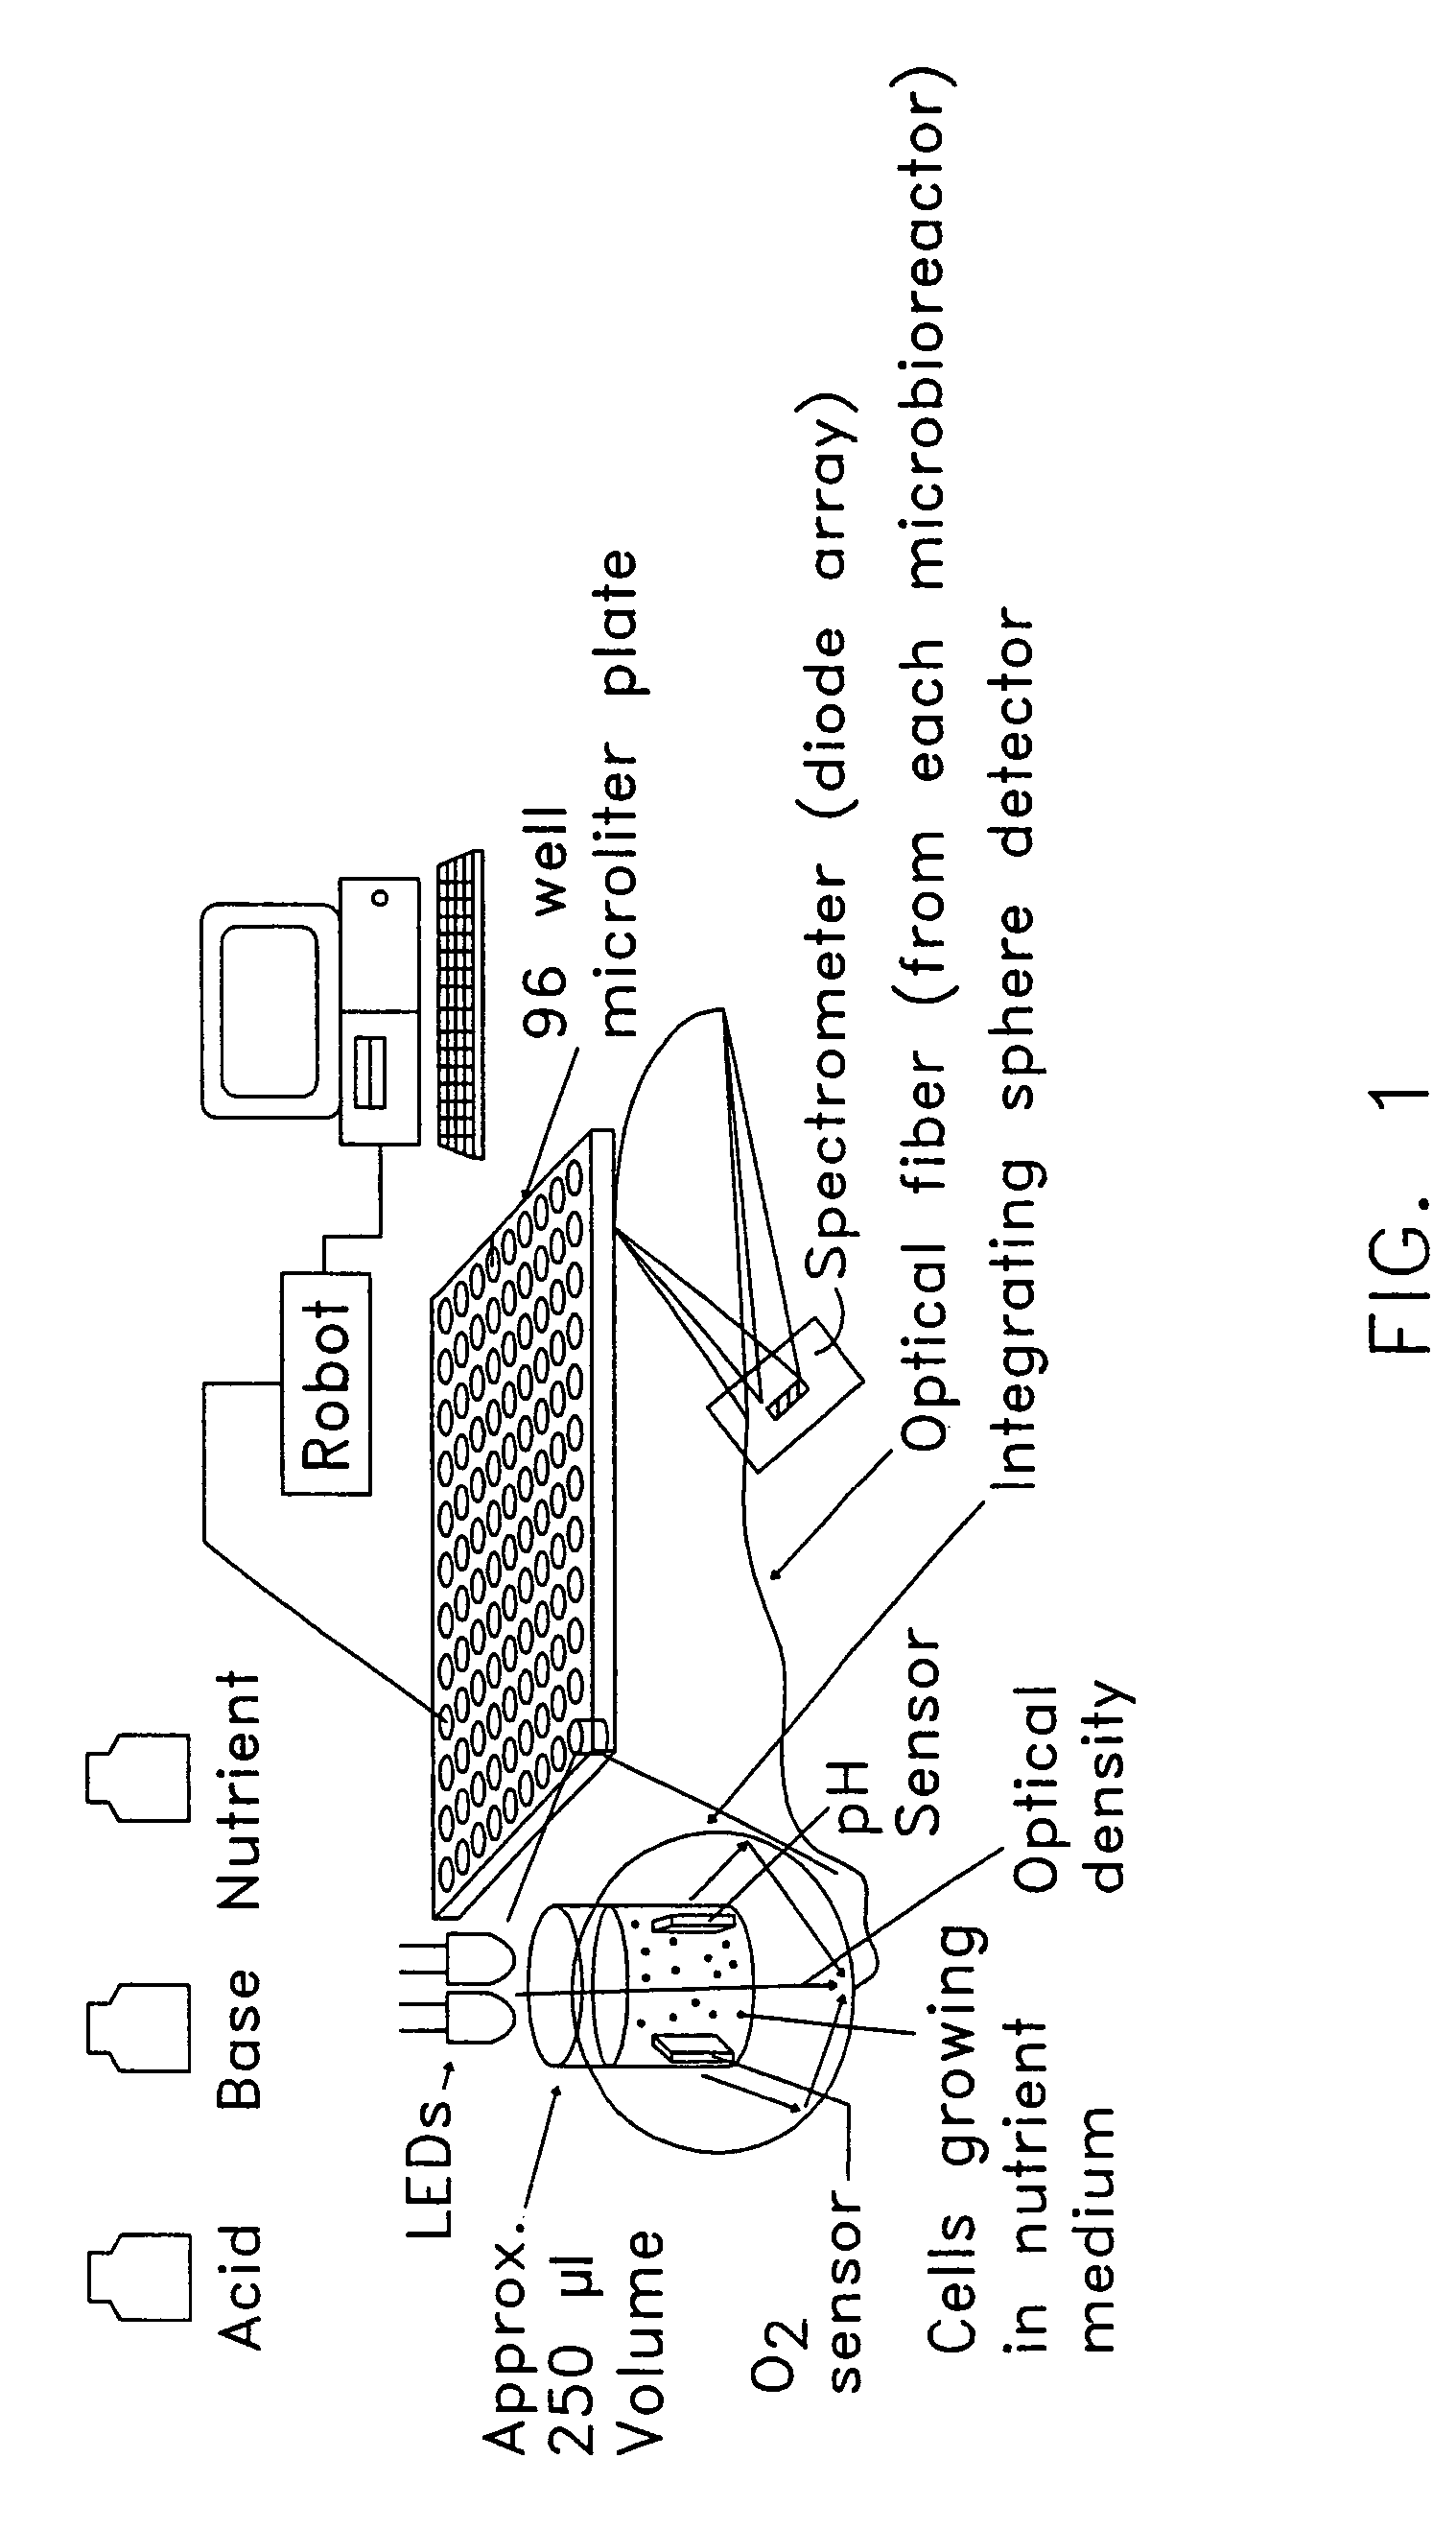 Bioreactor and bioprocessing technique